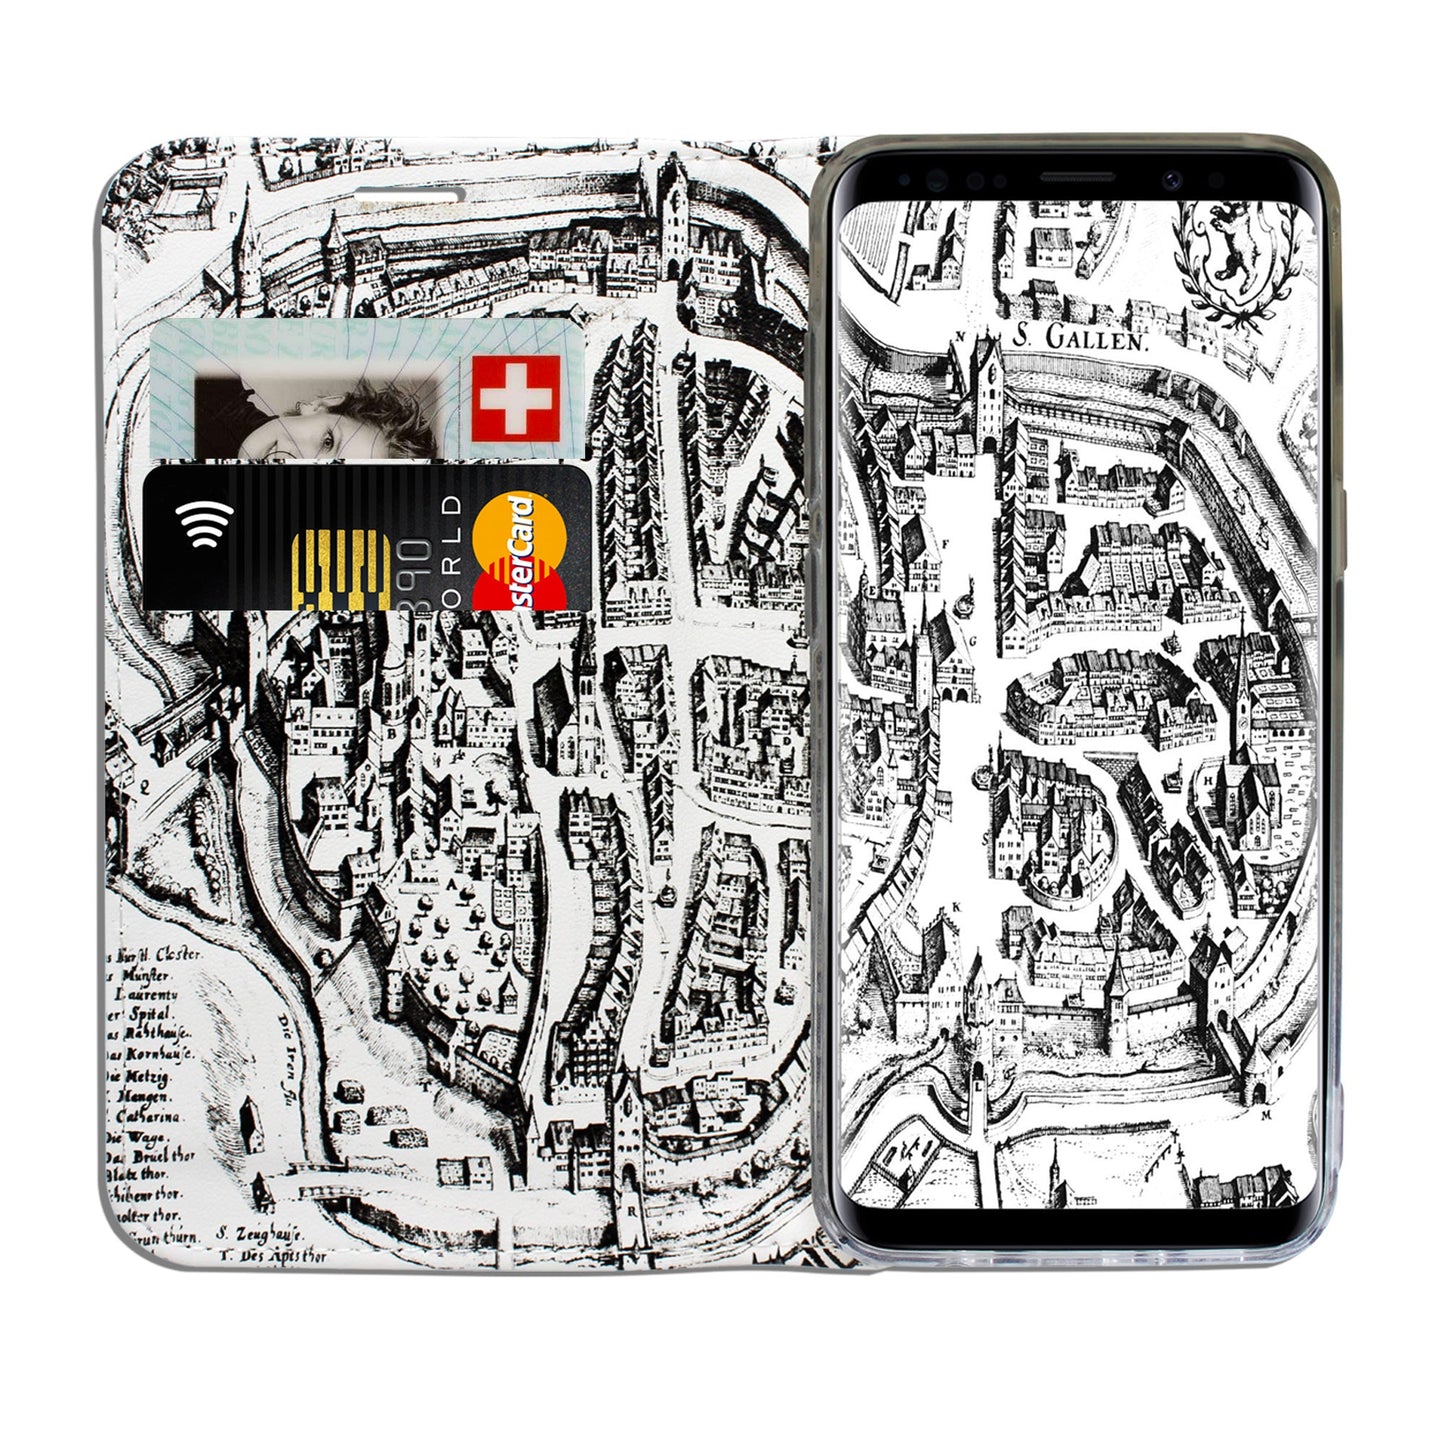 St. Gallen Merian Panorama Case für Samsung Galaxy S9 Plus